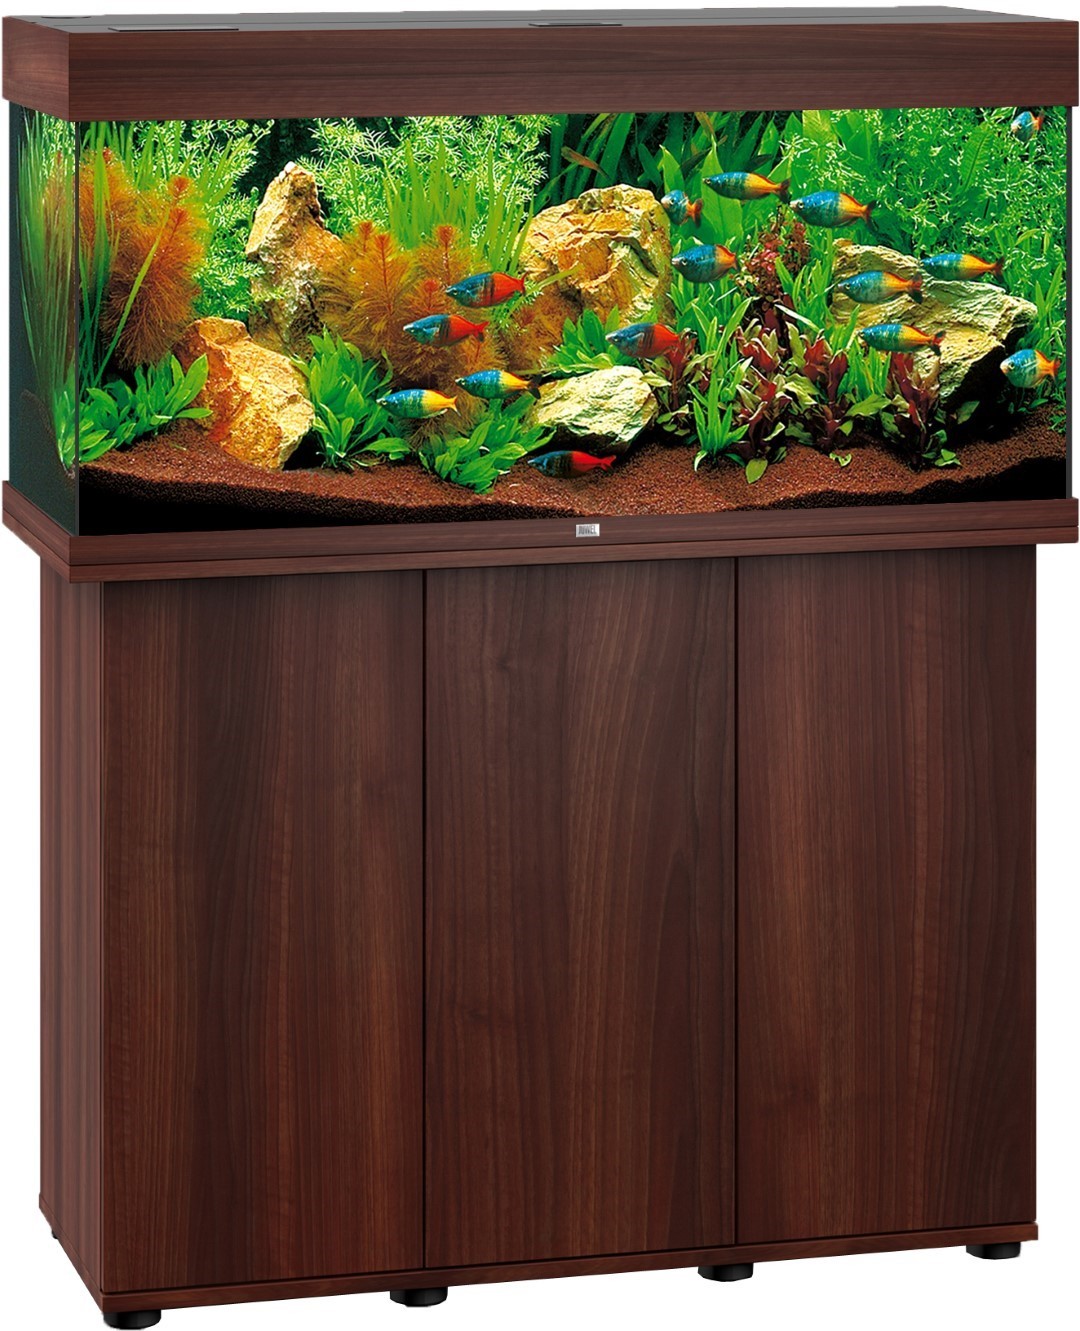 Juwel Rio Aquariumkast - Bruin - 101 x 73 cm - 180 L